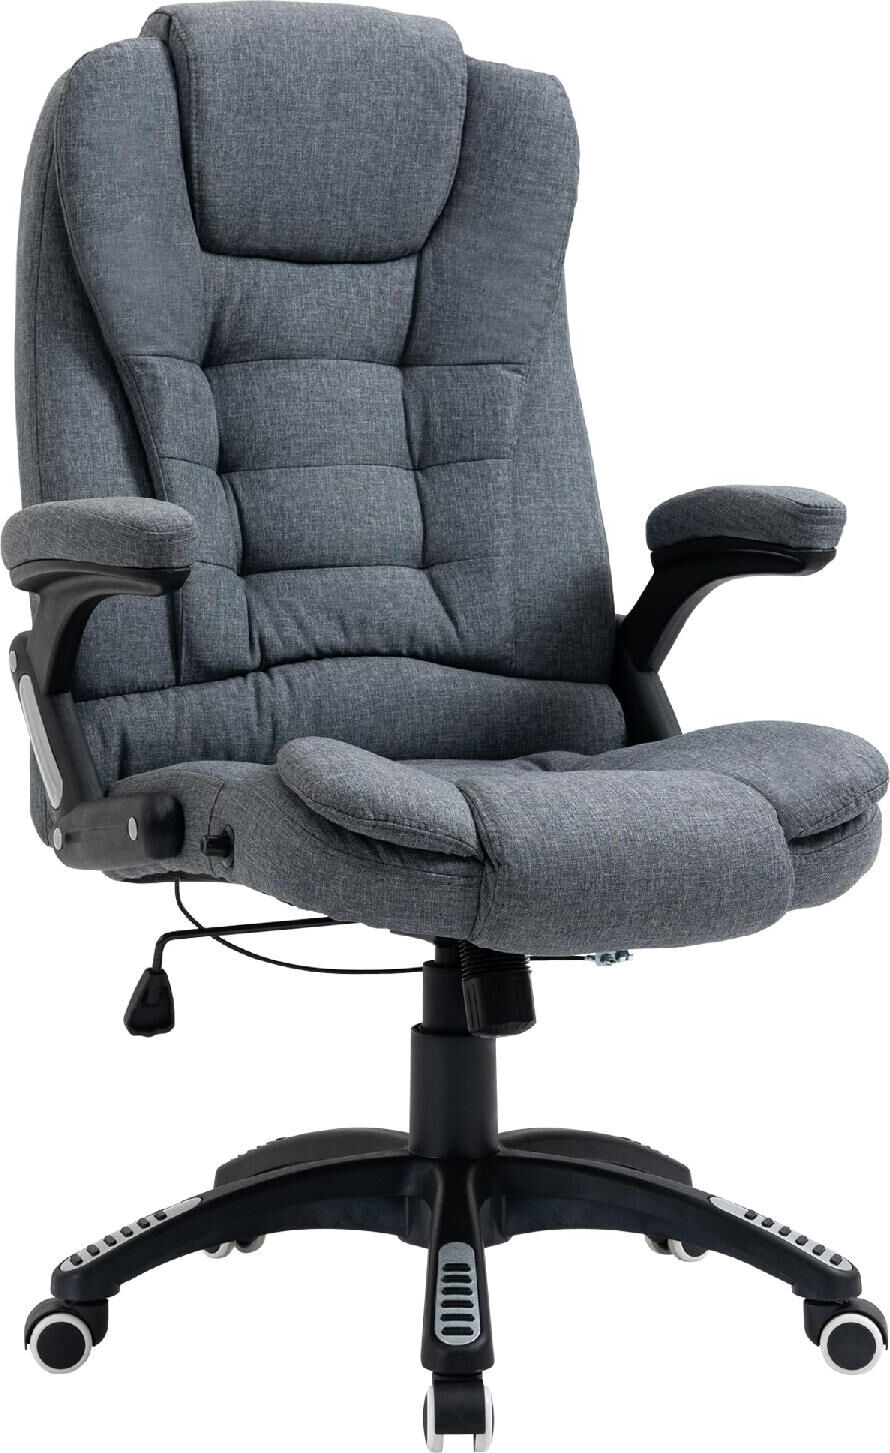 icon space 416/921 sedia ergonomica ufficio sedia da scrivania poltrona direzionale con rotelle e braccioli reclinabile, girevole e regolabile in altezza colore grigio - 416/921